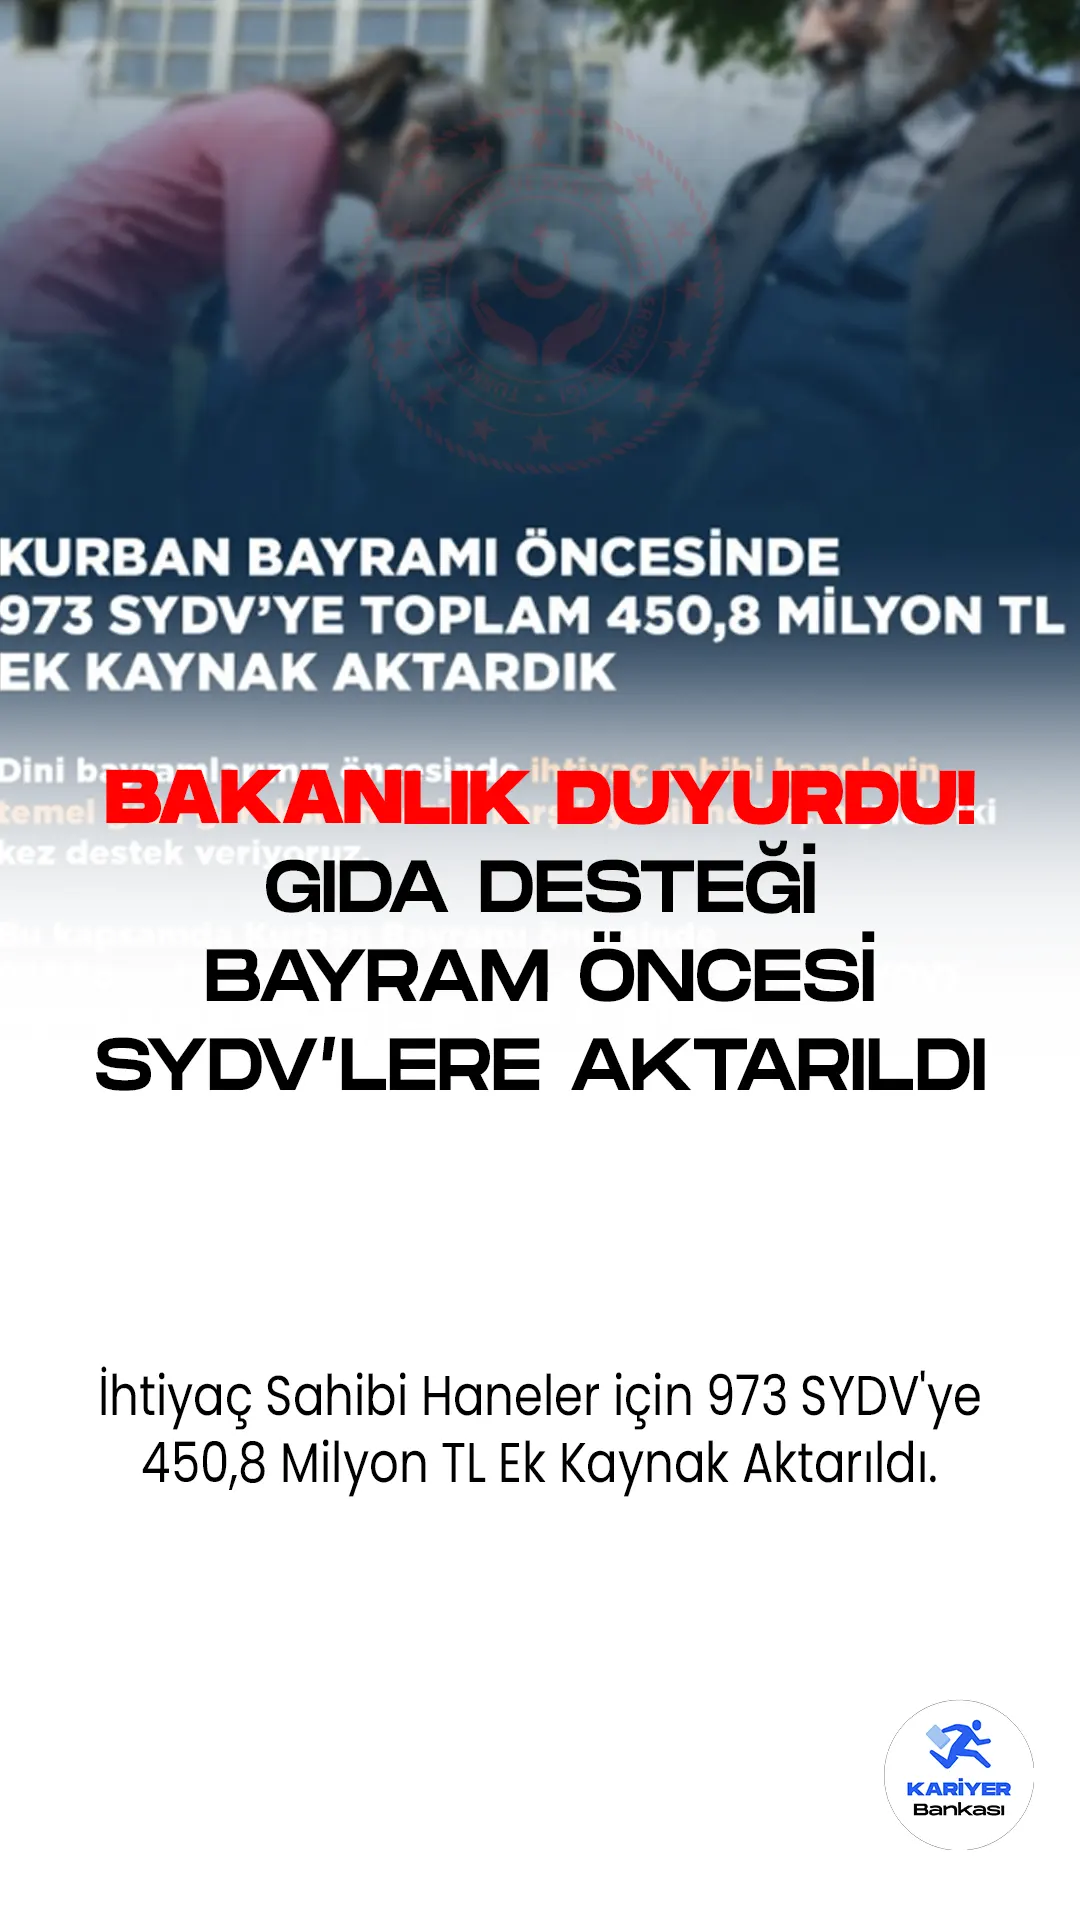 İhtiyaç Sahibi Haneler için 973 SYDV'ye 450,8 Milyon TL Ek Kaynak Aktarıldı.Türkiye'de ihtiyaç sahibi hanelerin temel gıda gereksinimlerini karşılamak amacıyla, 973 Sosyal Yardımlaşma ve Dayanışma Vakfı'na (SYDV), 450,8 milyon TL ek kaynak sağlandı.